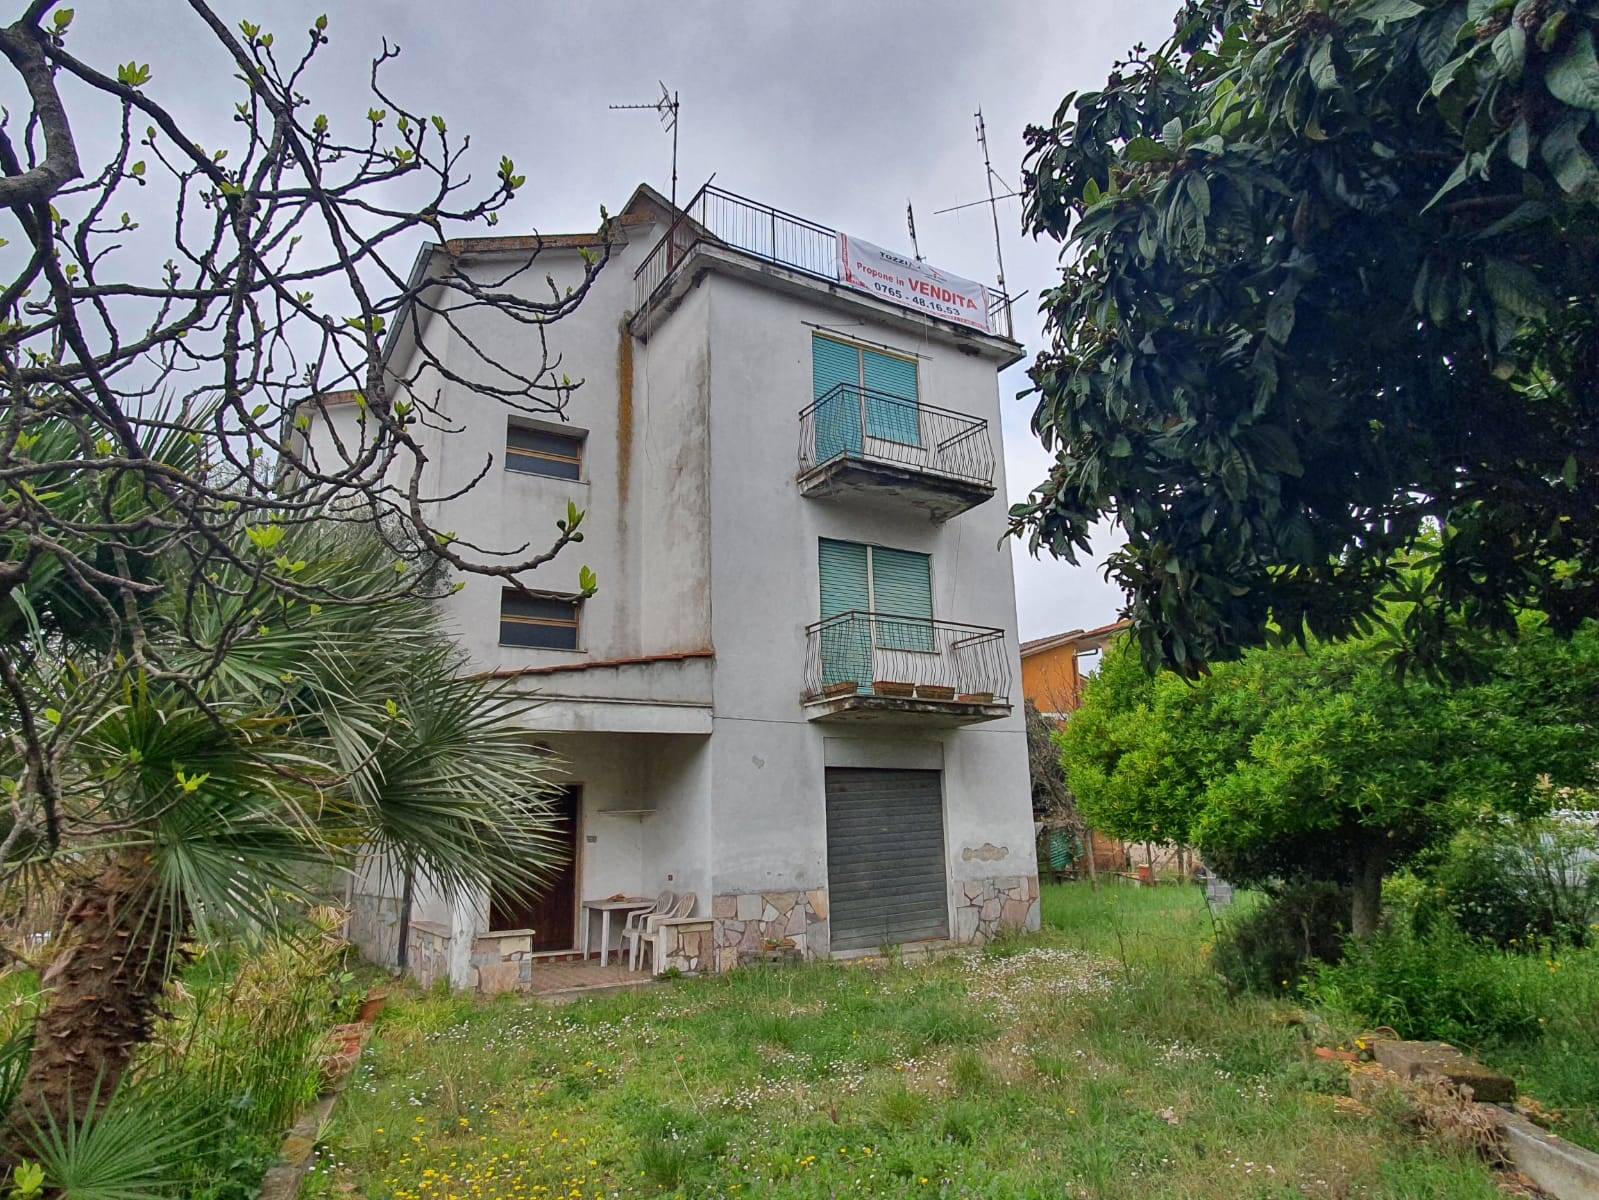 Appartamento in vendita a Forano, 3 locali, zona Località: GAVIGNANO SABINO, prezzo € 75.000 | CambioCasa.it